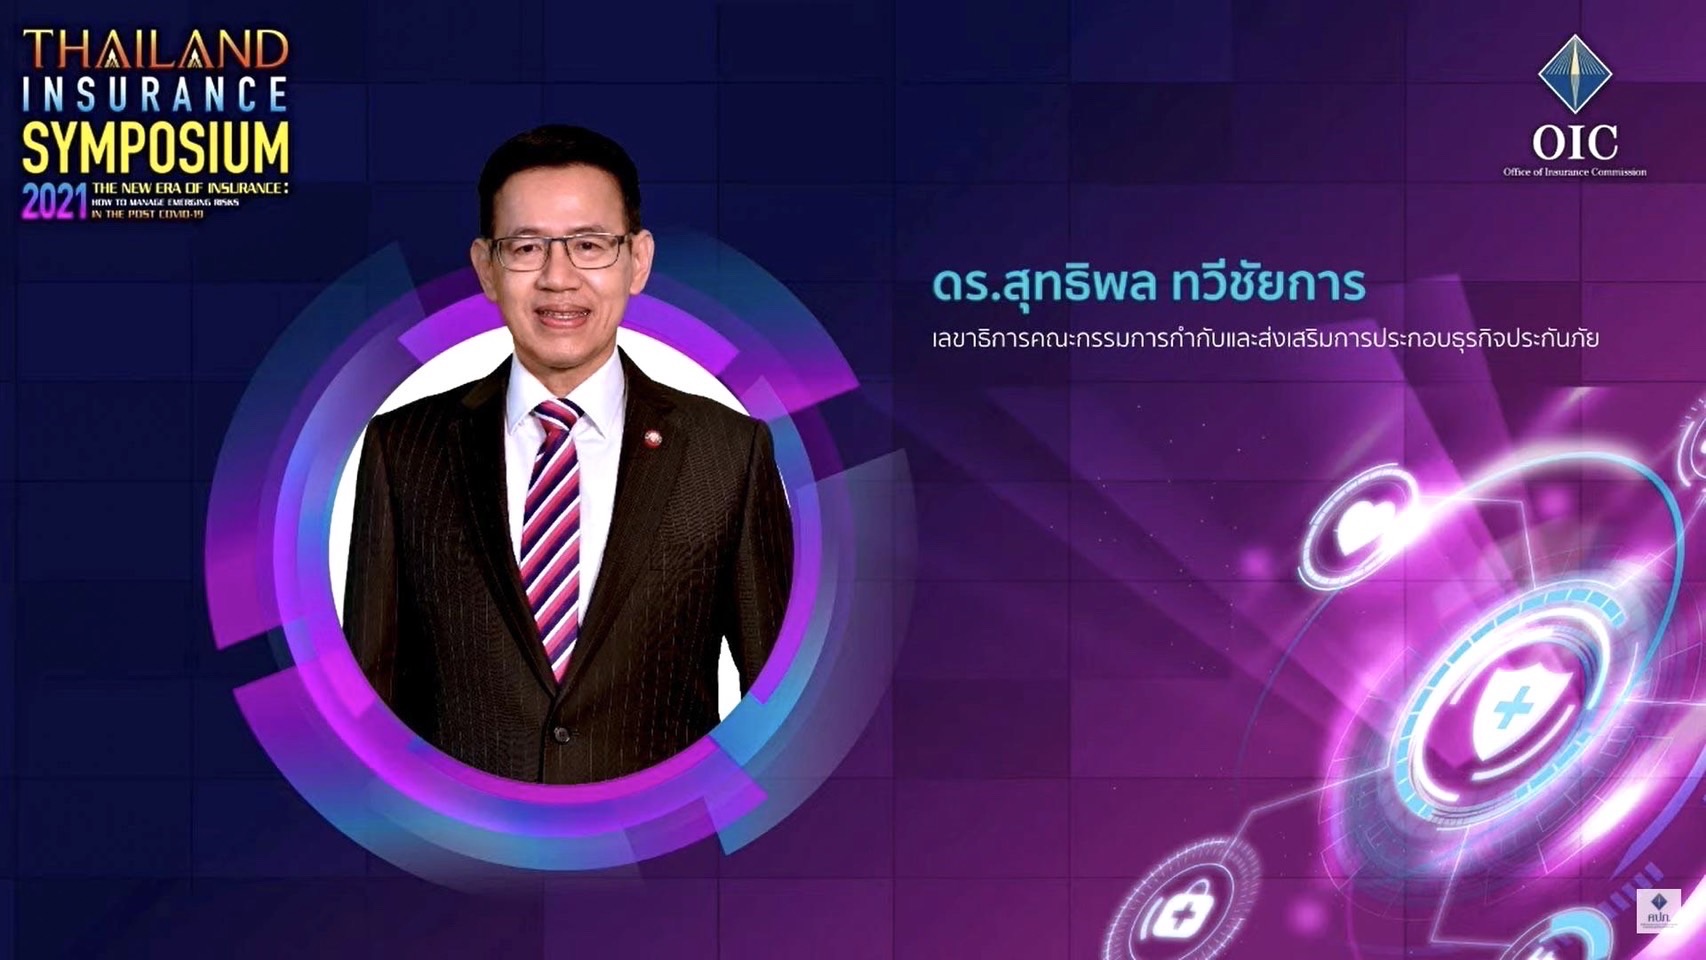 คปภ. จัดสัมมนาวิชาการประกันภัยประจำปี Thailand Insurance Symposium 2021